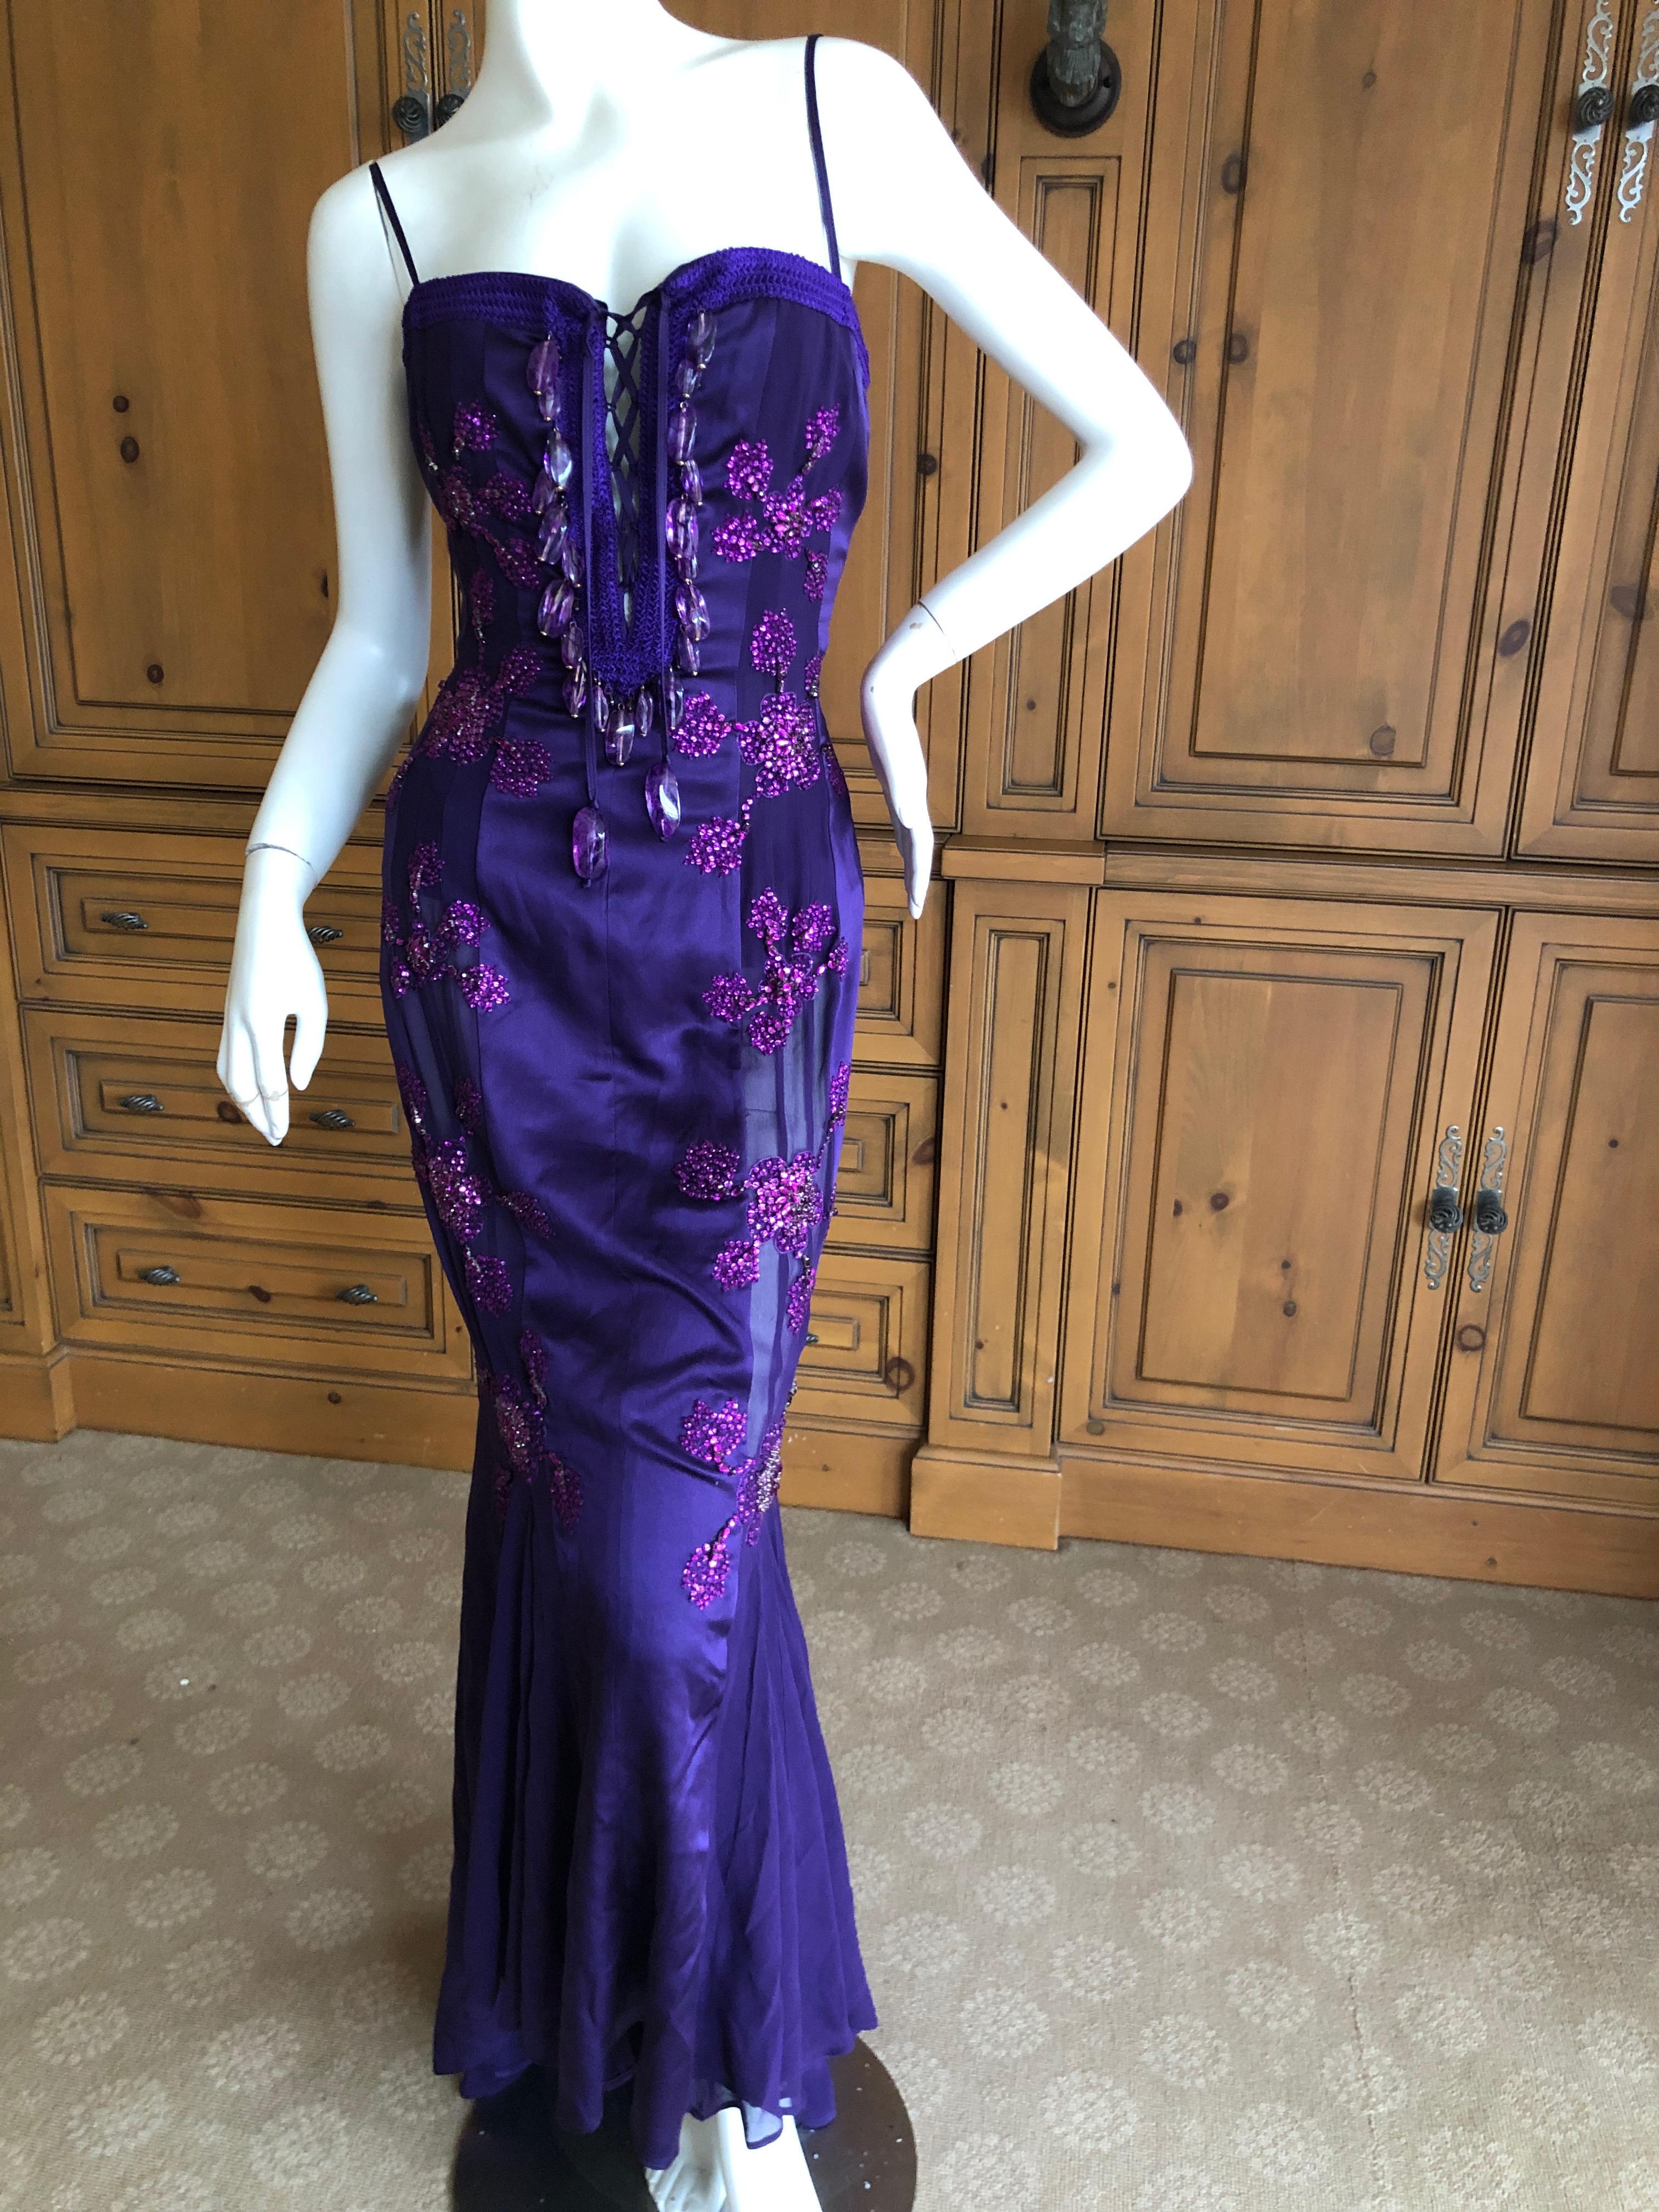 Emanuel Ungaro Amethyst Embellished Vintage Silk Evening Dress by Peter Dundas For Sale 2